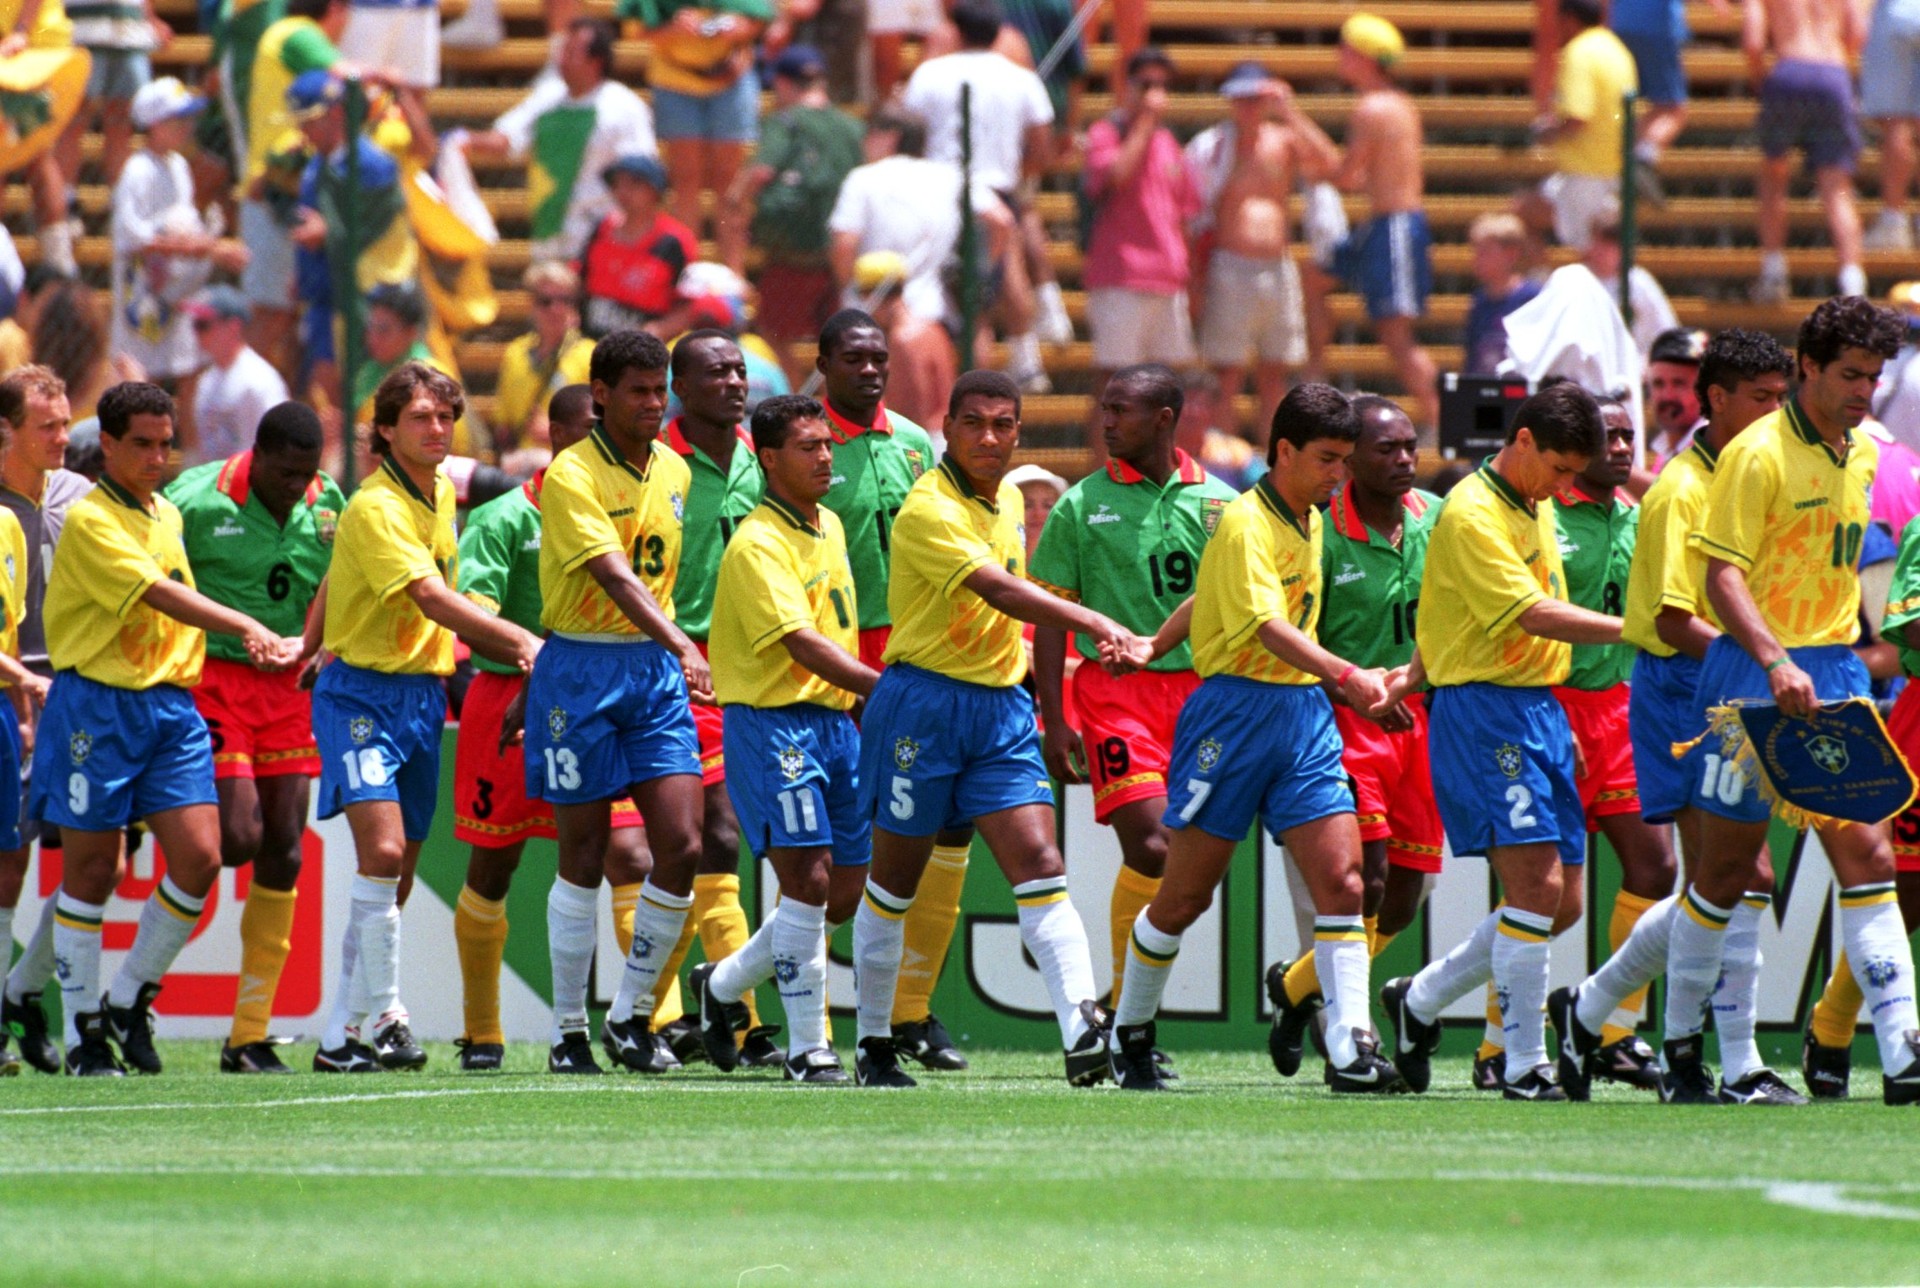 Único confronto entre as seleções em Copas do Mundo foi vencido pelo Brasil, em 1994: 3 a 0 (Foto: Getty Images)